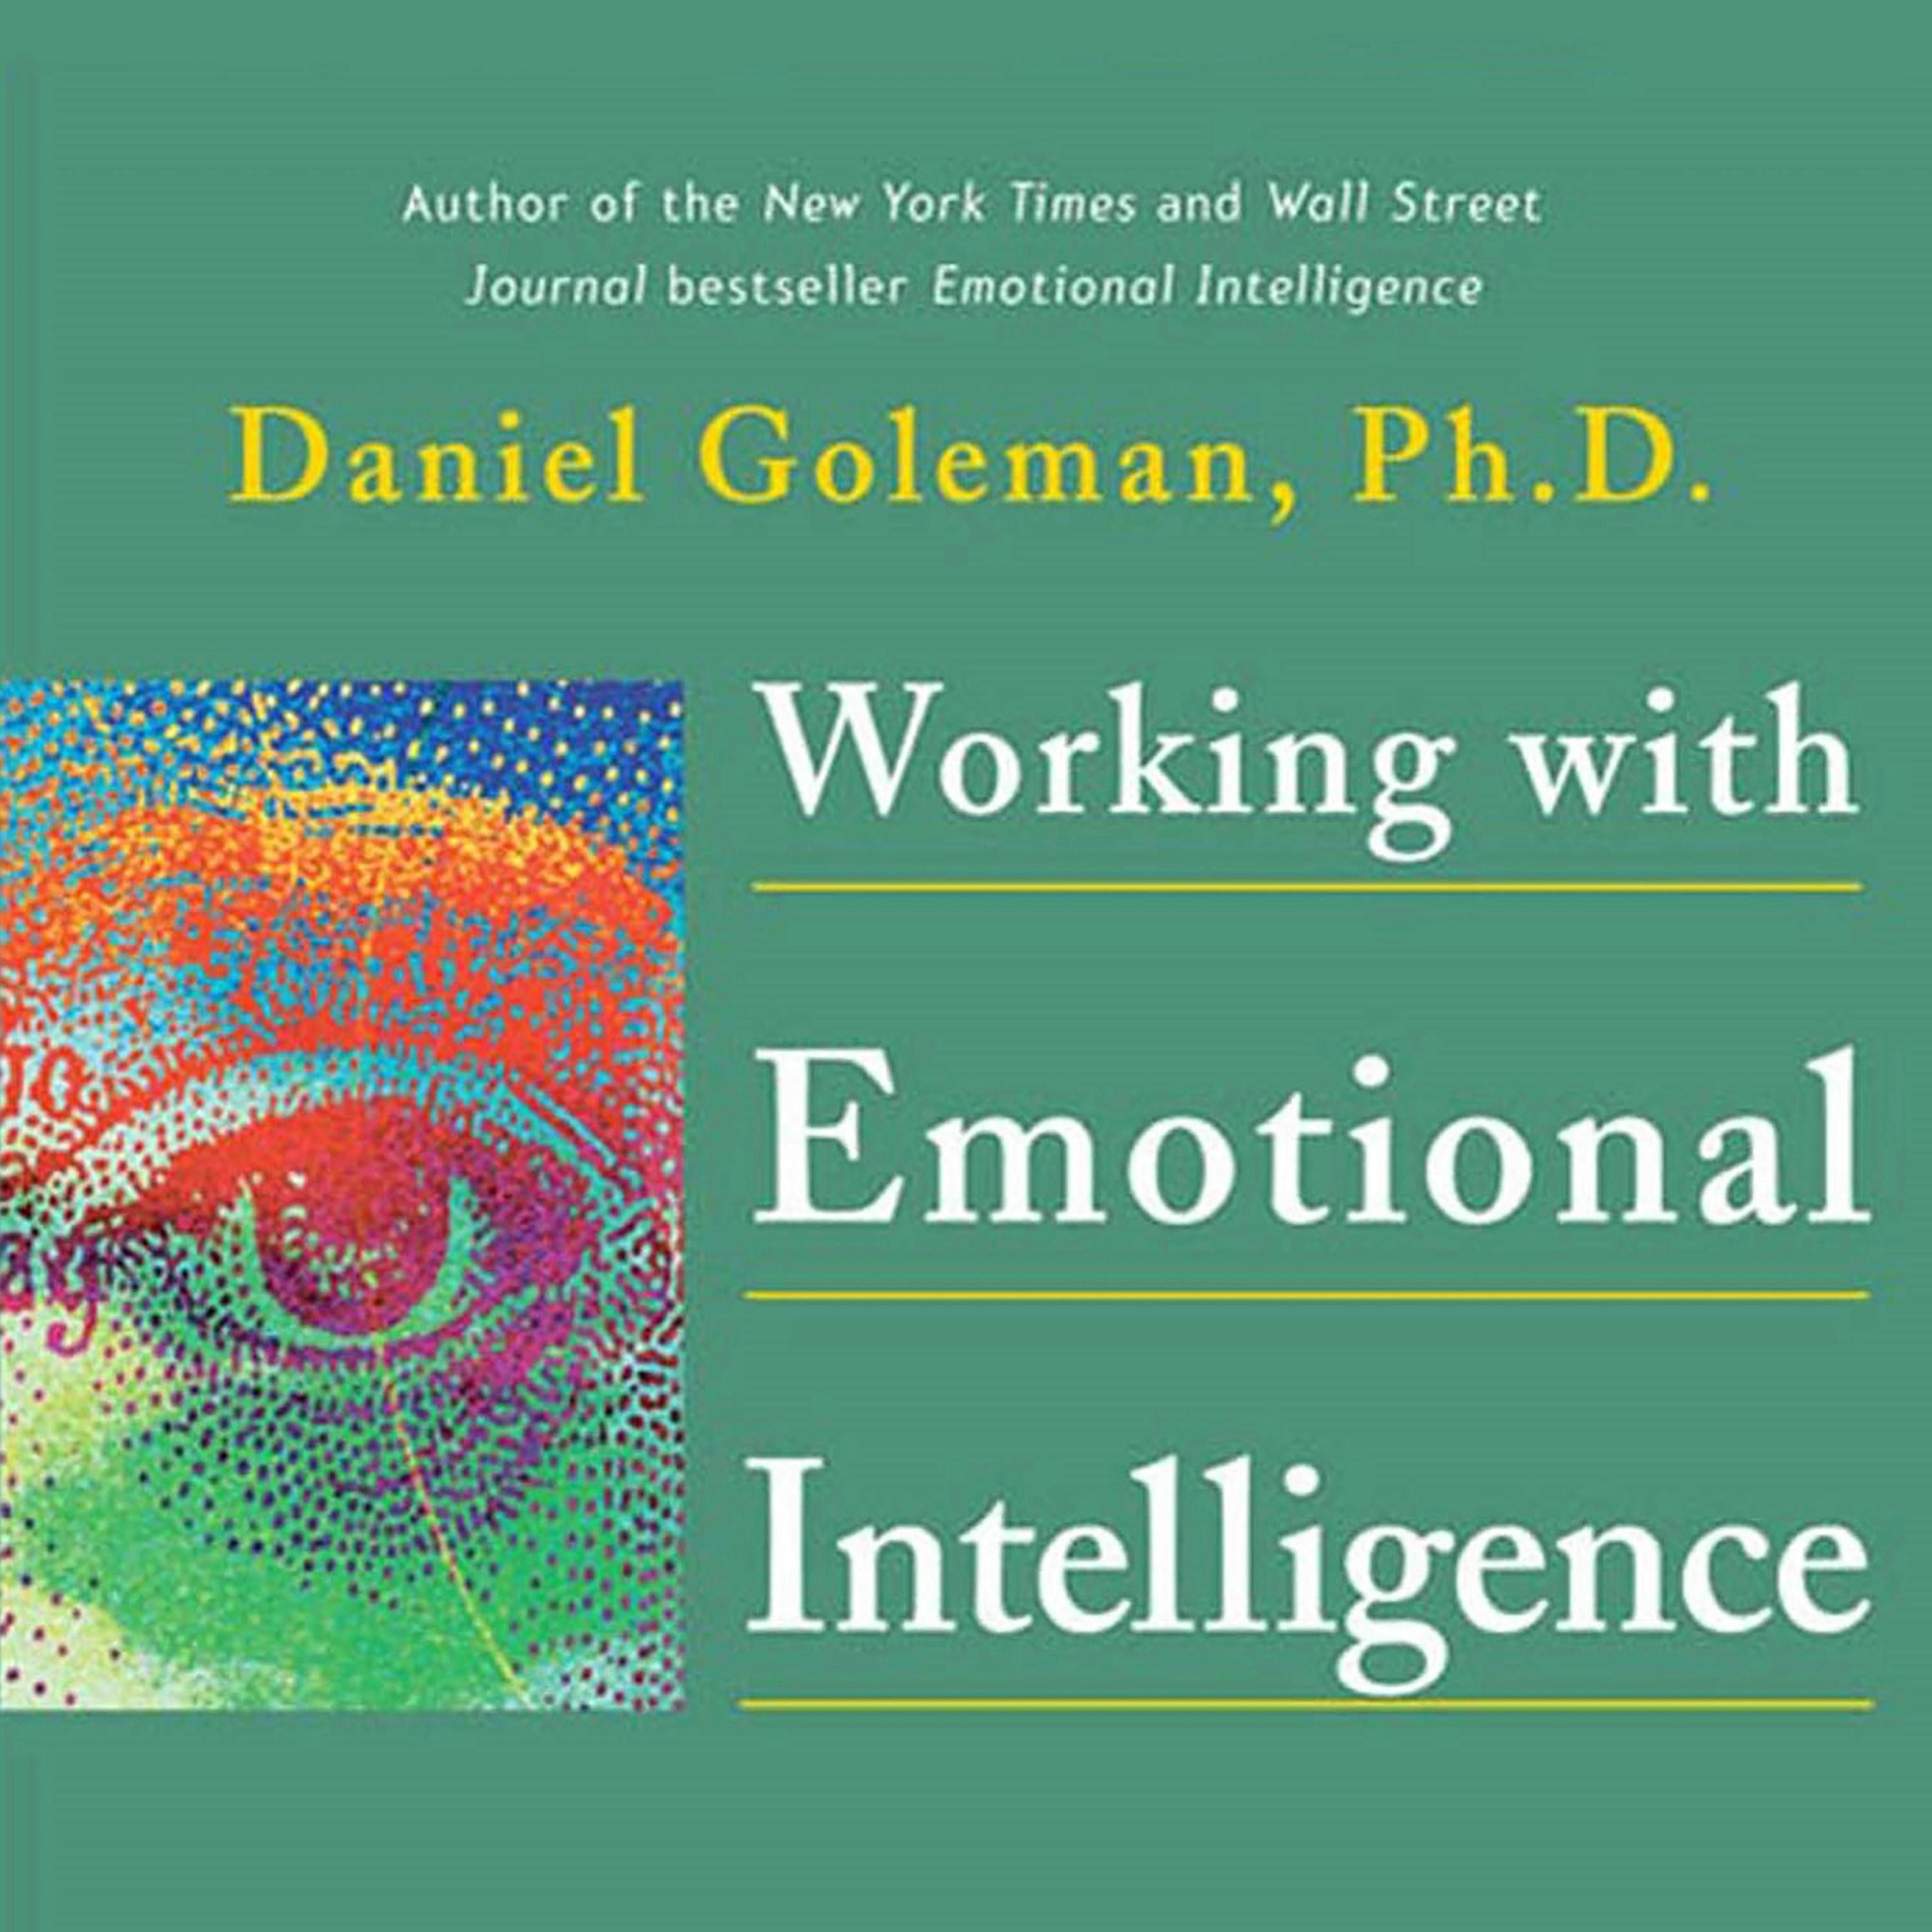 emotional intelligence daniel goleman essay